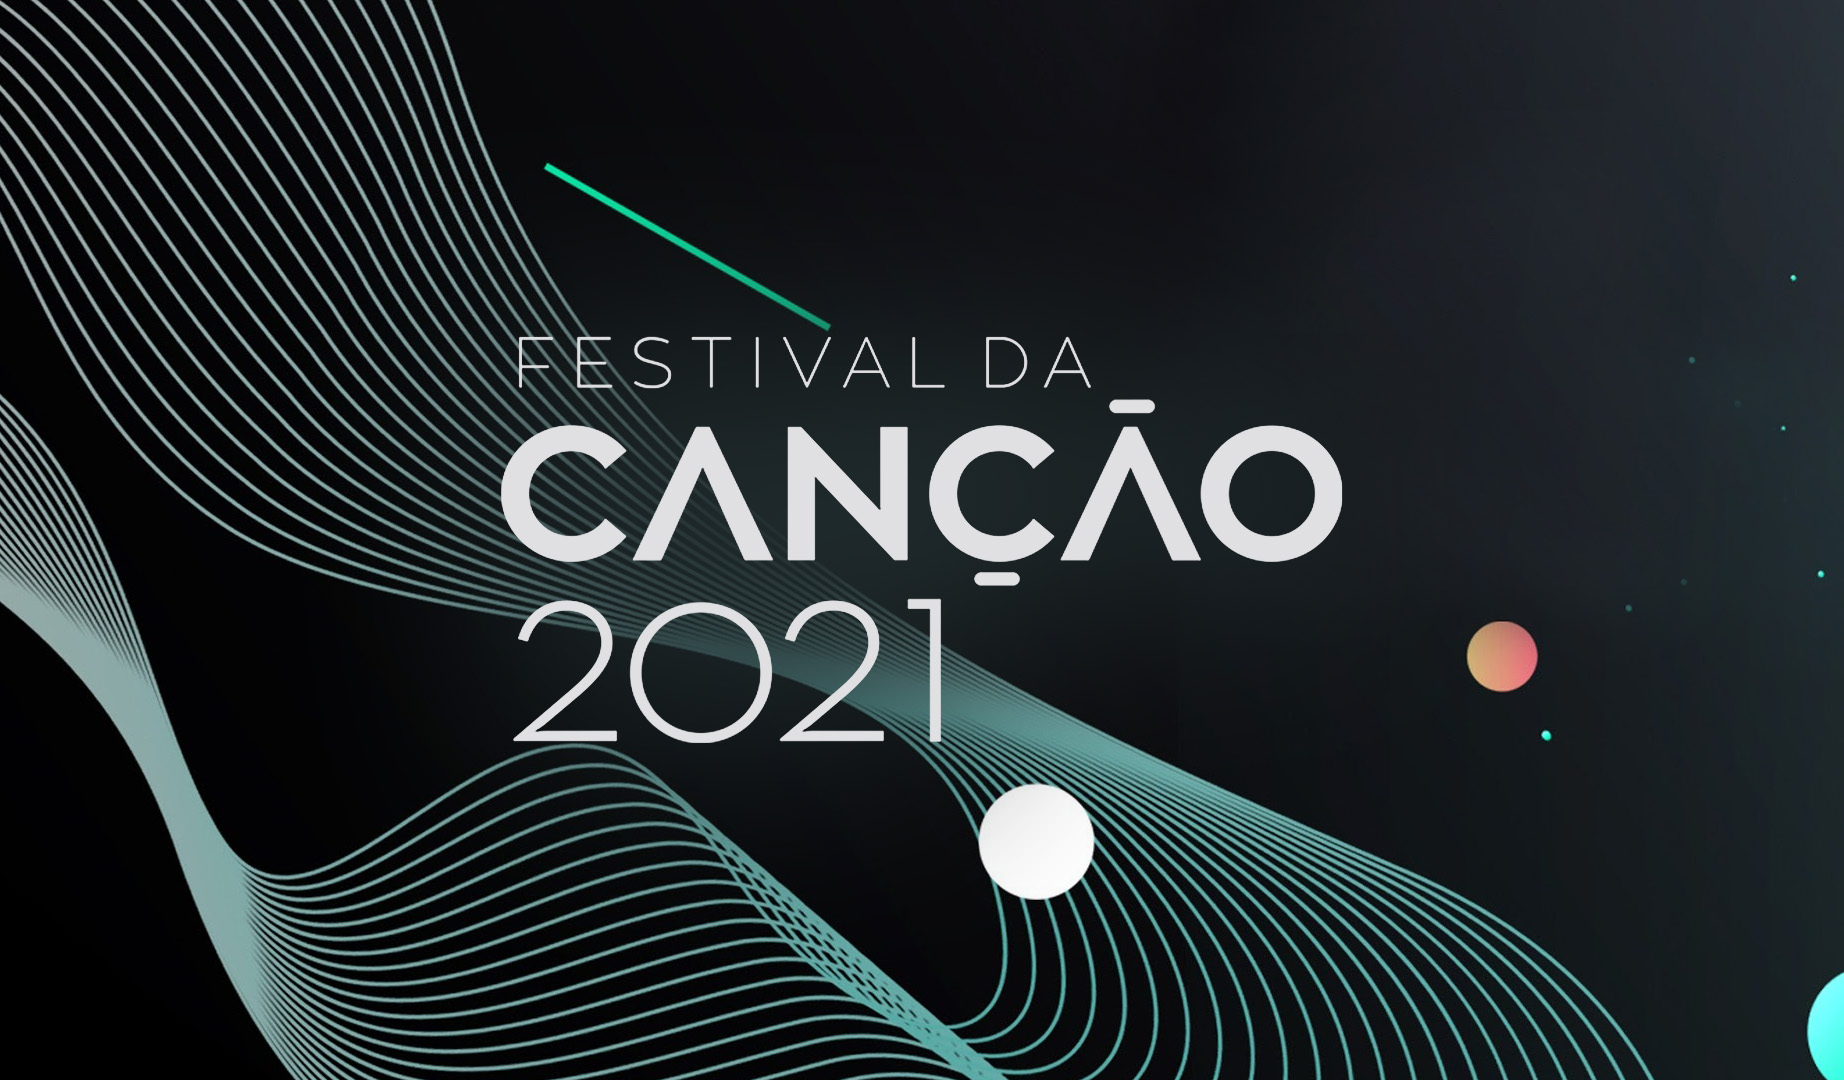 Πορτογαλία: Ψηφίστε το αγαπημένο σας τραγούδι από το Festival da Cançao 2021